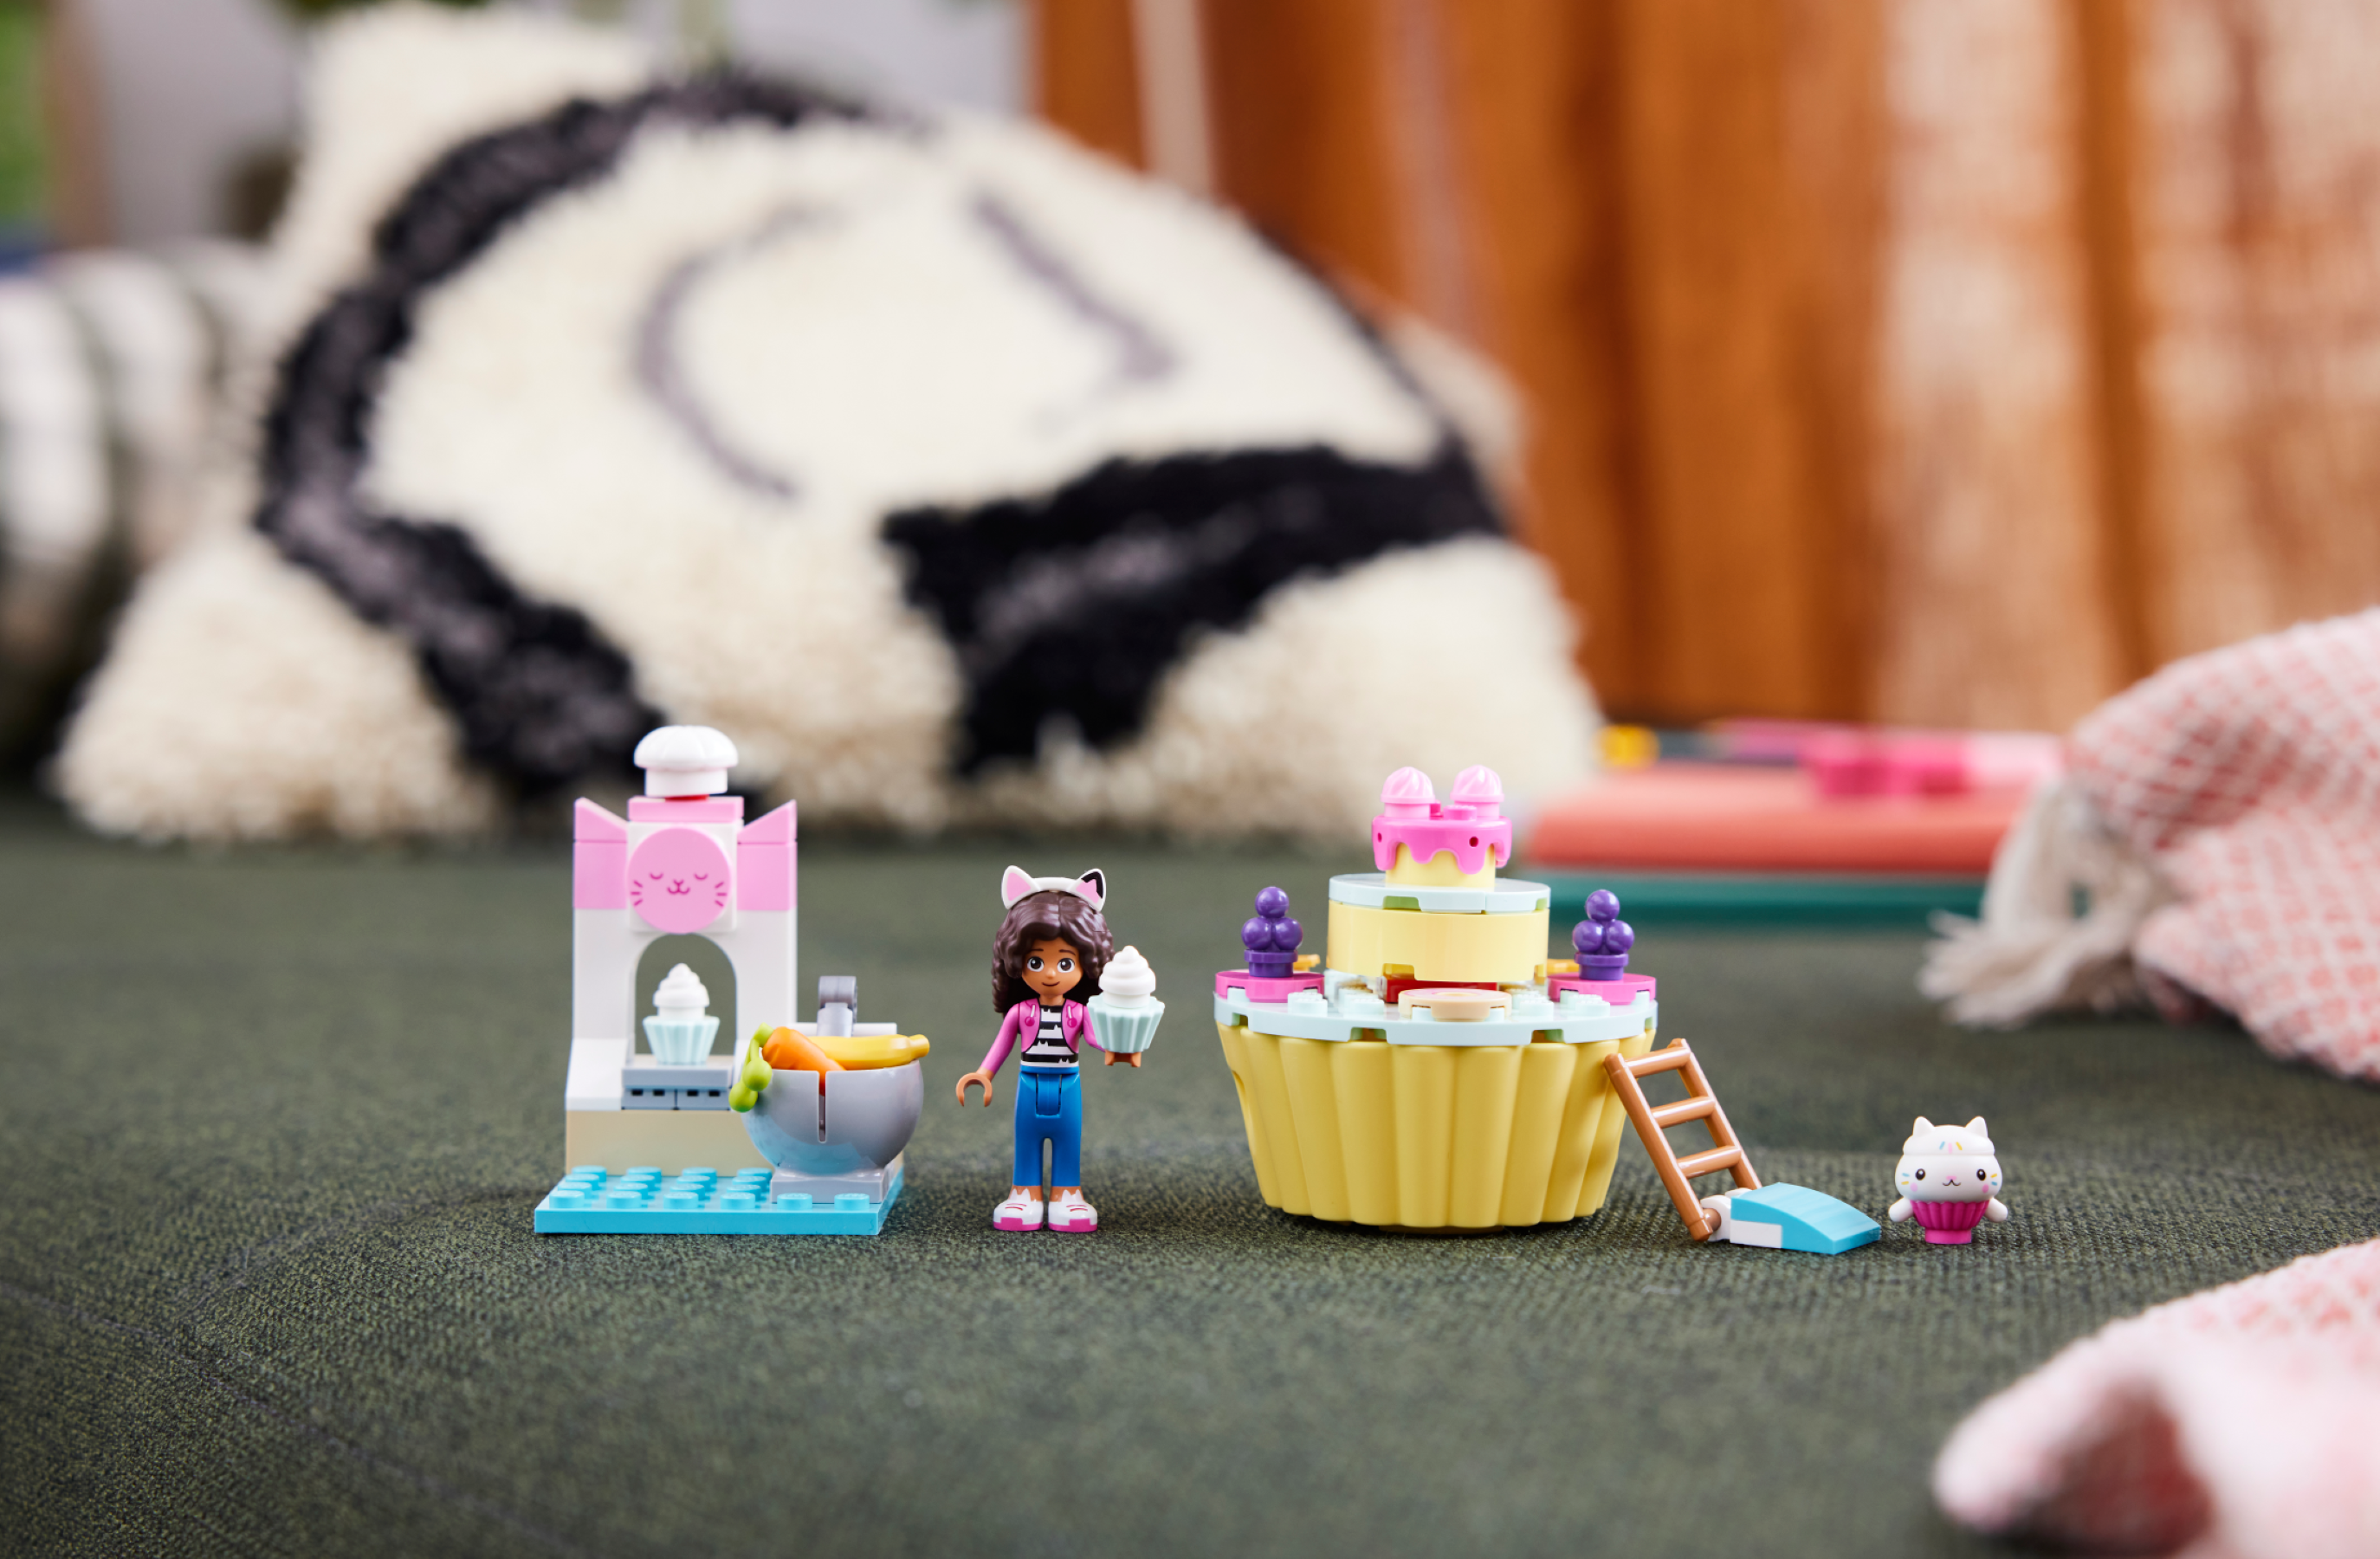 Bakey with Cakey Fun 10785, LEGO® Gabby's Dollhouse